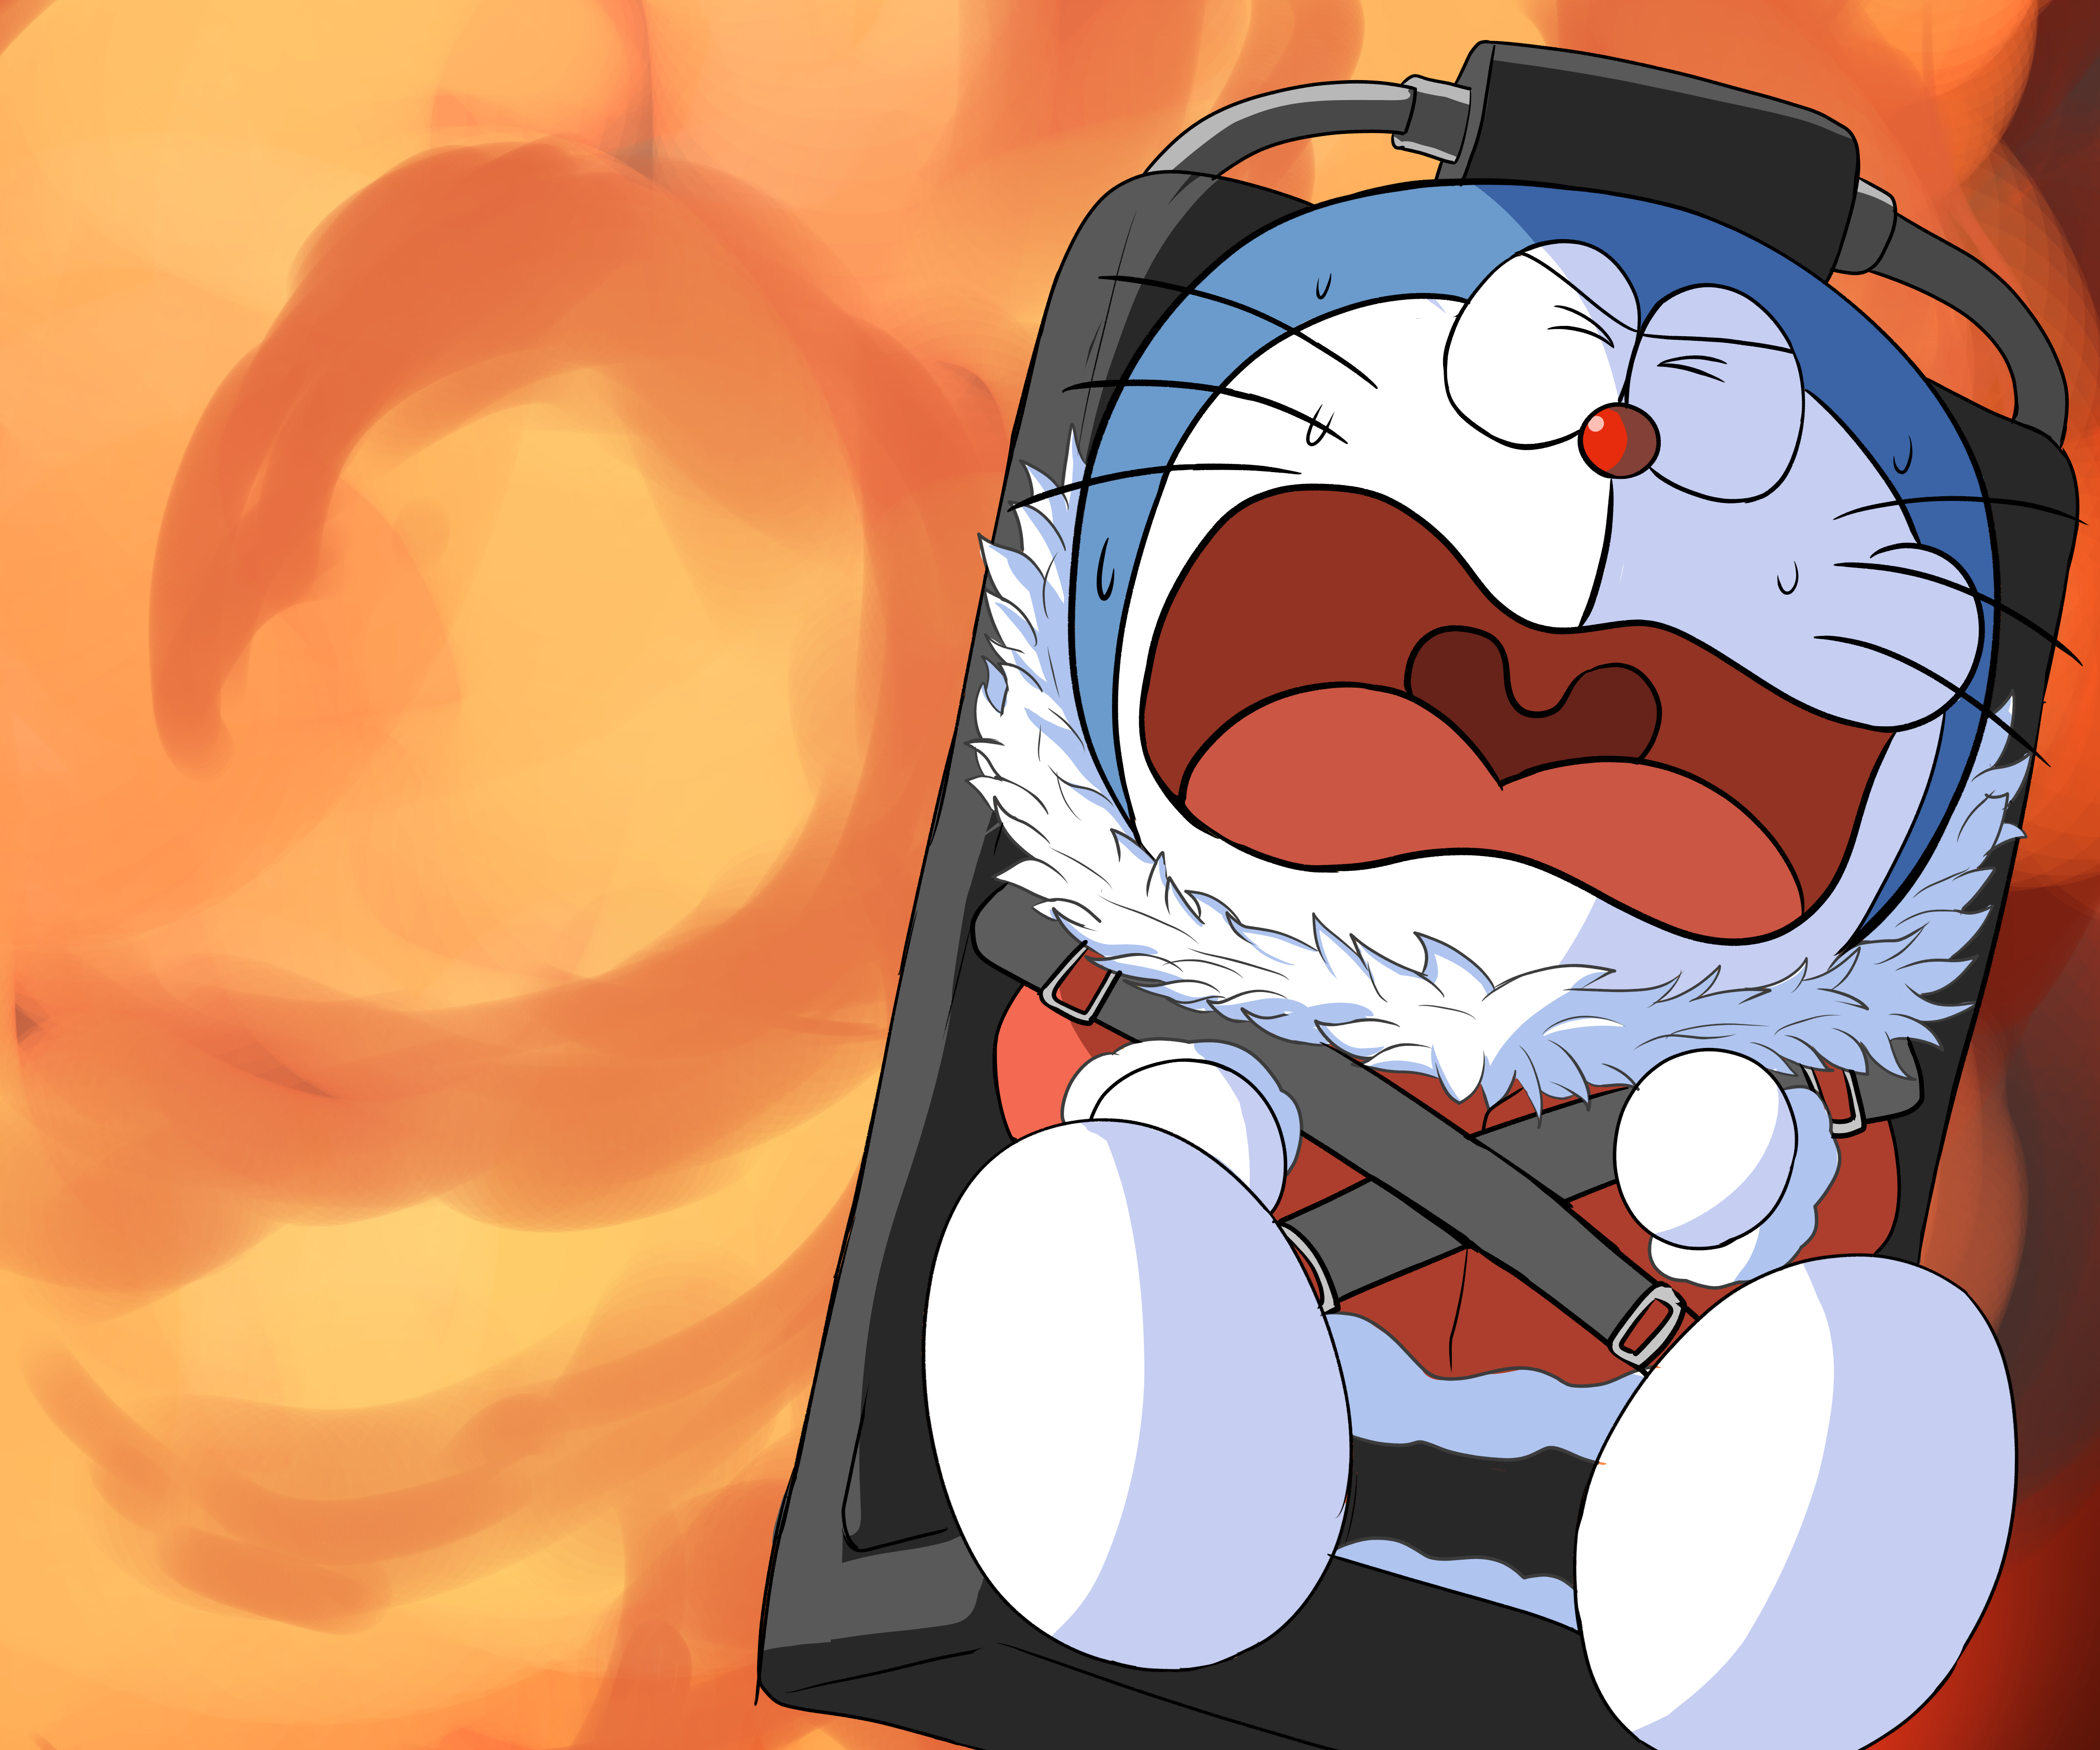 Hình nền Doraemon anime 4k Ultra HD của 美少女力士 sẽ khiến bạn phải ngắm nhìn mãi không muốn rời mắt. Với độ phân giải siêu nét và màu sắc tươi trẻ, bức ảnh sẽ đưa bạn vào một thế giới ảo đầy mơ mộng và huyền bí. Tải ngay để cảm nhận sự đẹp đến từ tác phẩm nổi tiếng này.